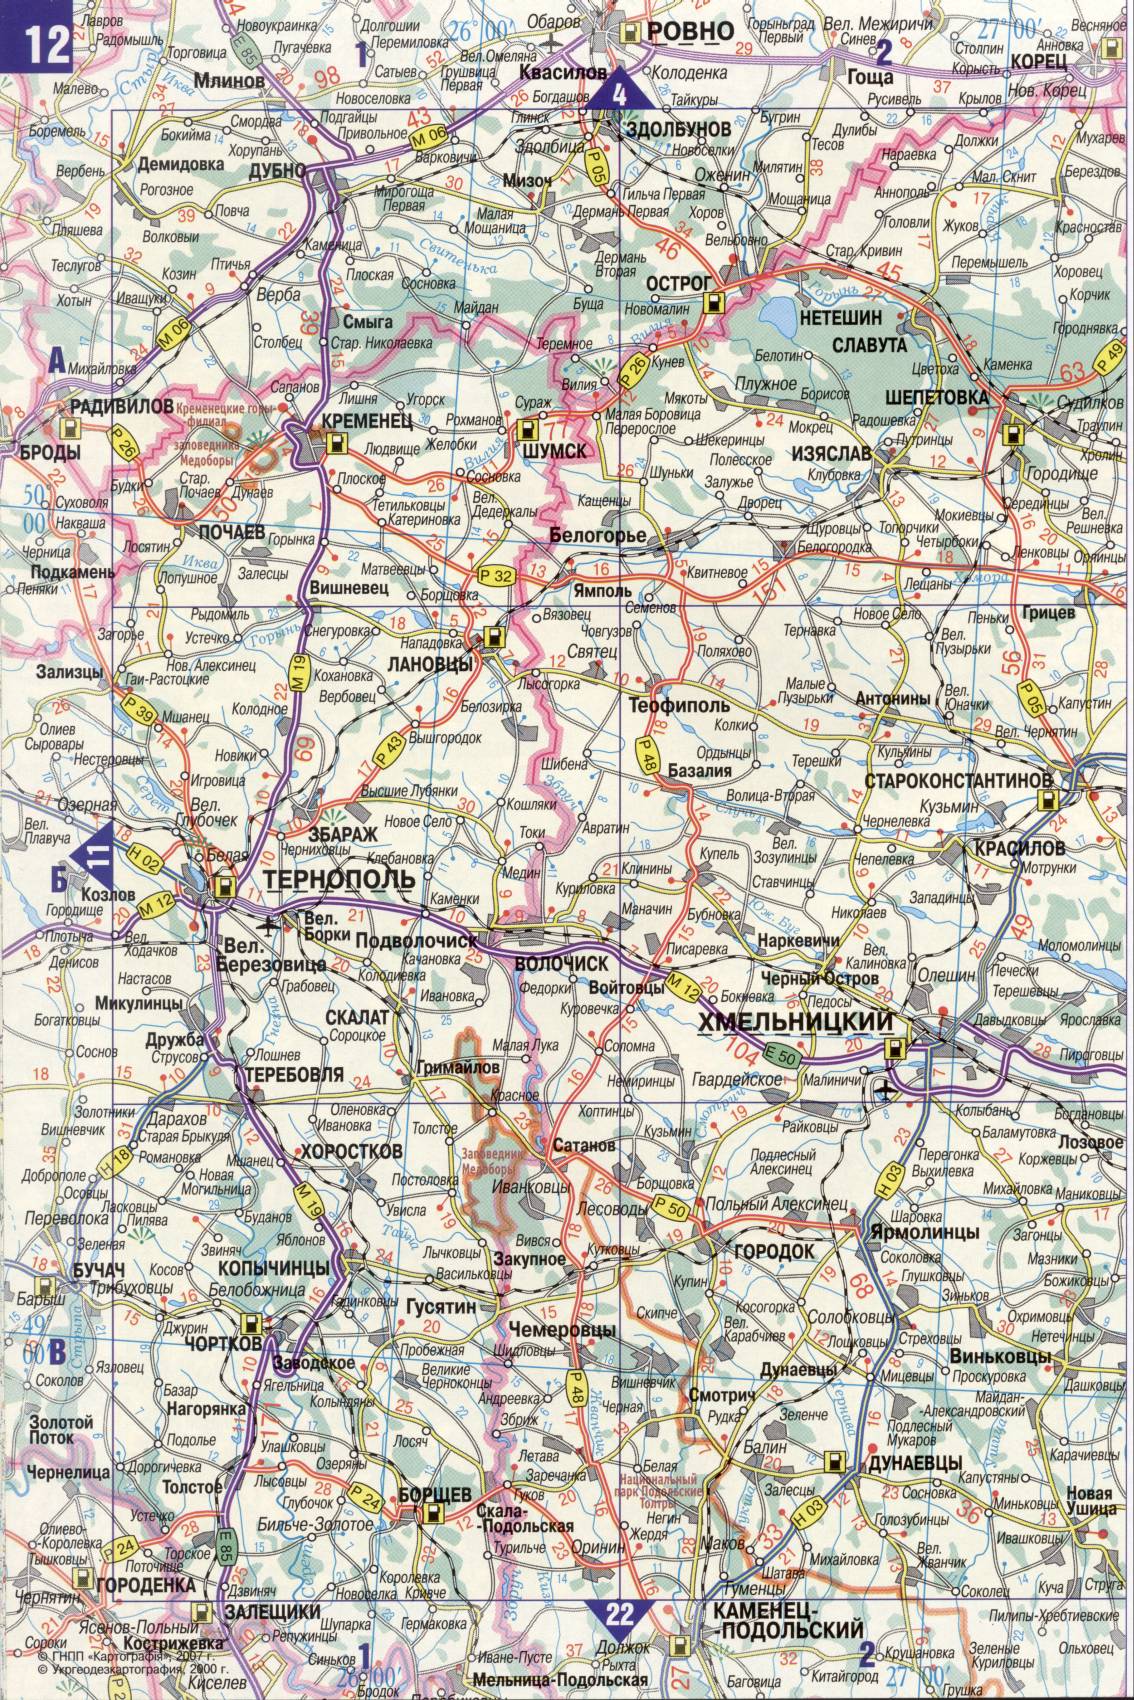 Carte de l'Ukraine. Détaillée carte routière de l'Ukraine de satin. télécharger gratuitement, C1